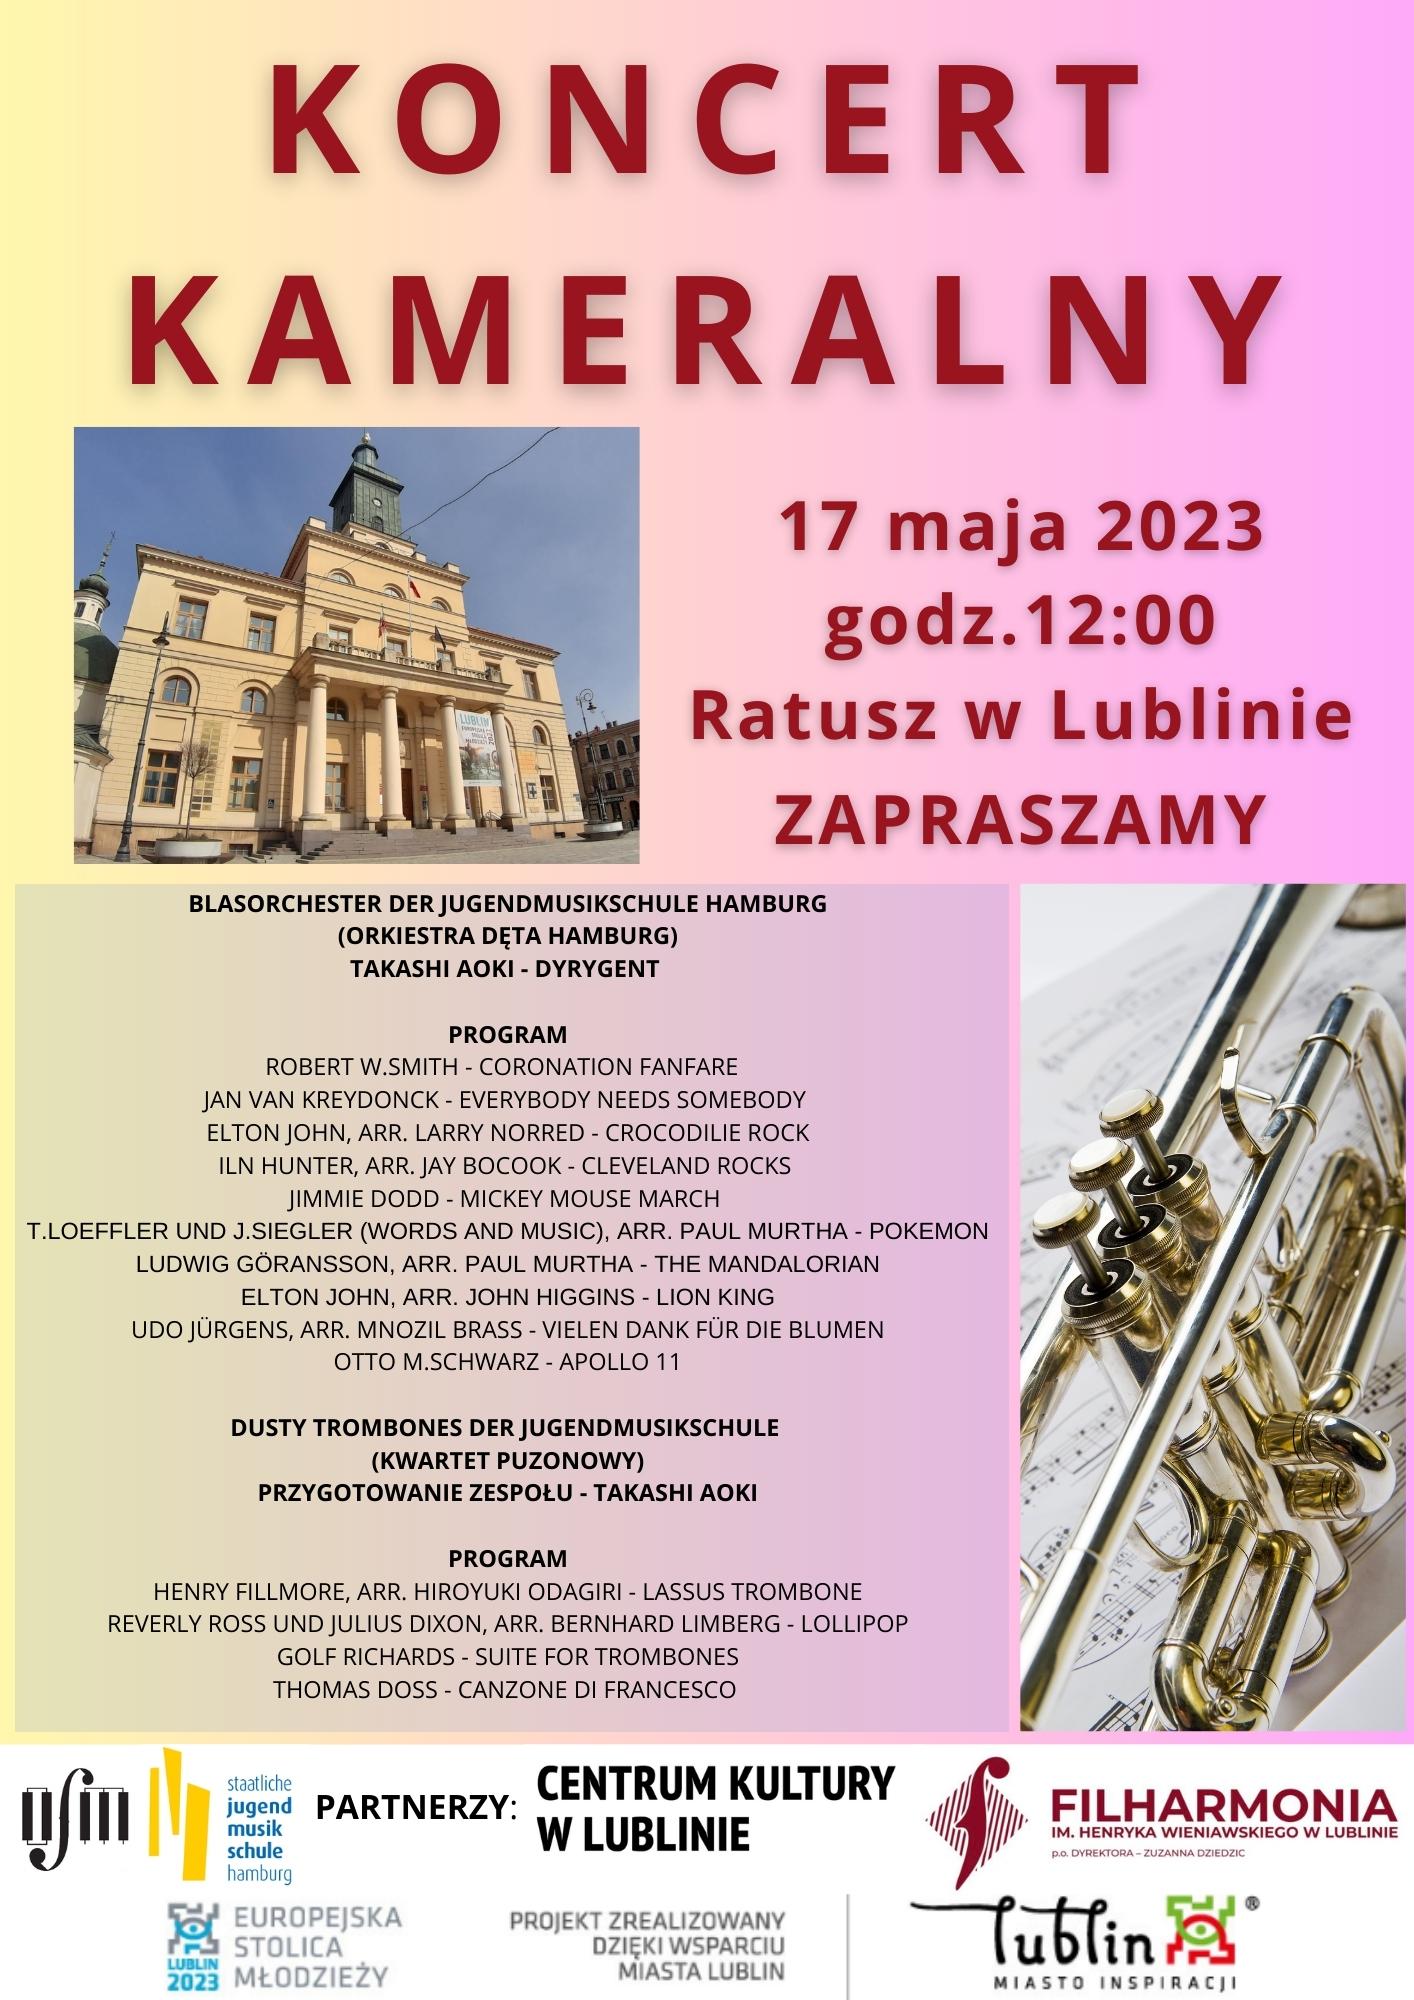 Koncert kameralny 17 maja 2023, godz. 12:00, Ratusz w Lublinie, Zapraszamy. Po lewej stronie napisu zdjęcie ratusza. Niżej zdjęcia po lewej stronie wypisany program wydarzenia, po prawej stronie zdjęcie trąbki. Na dolej loga organizatorów.